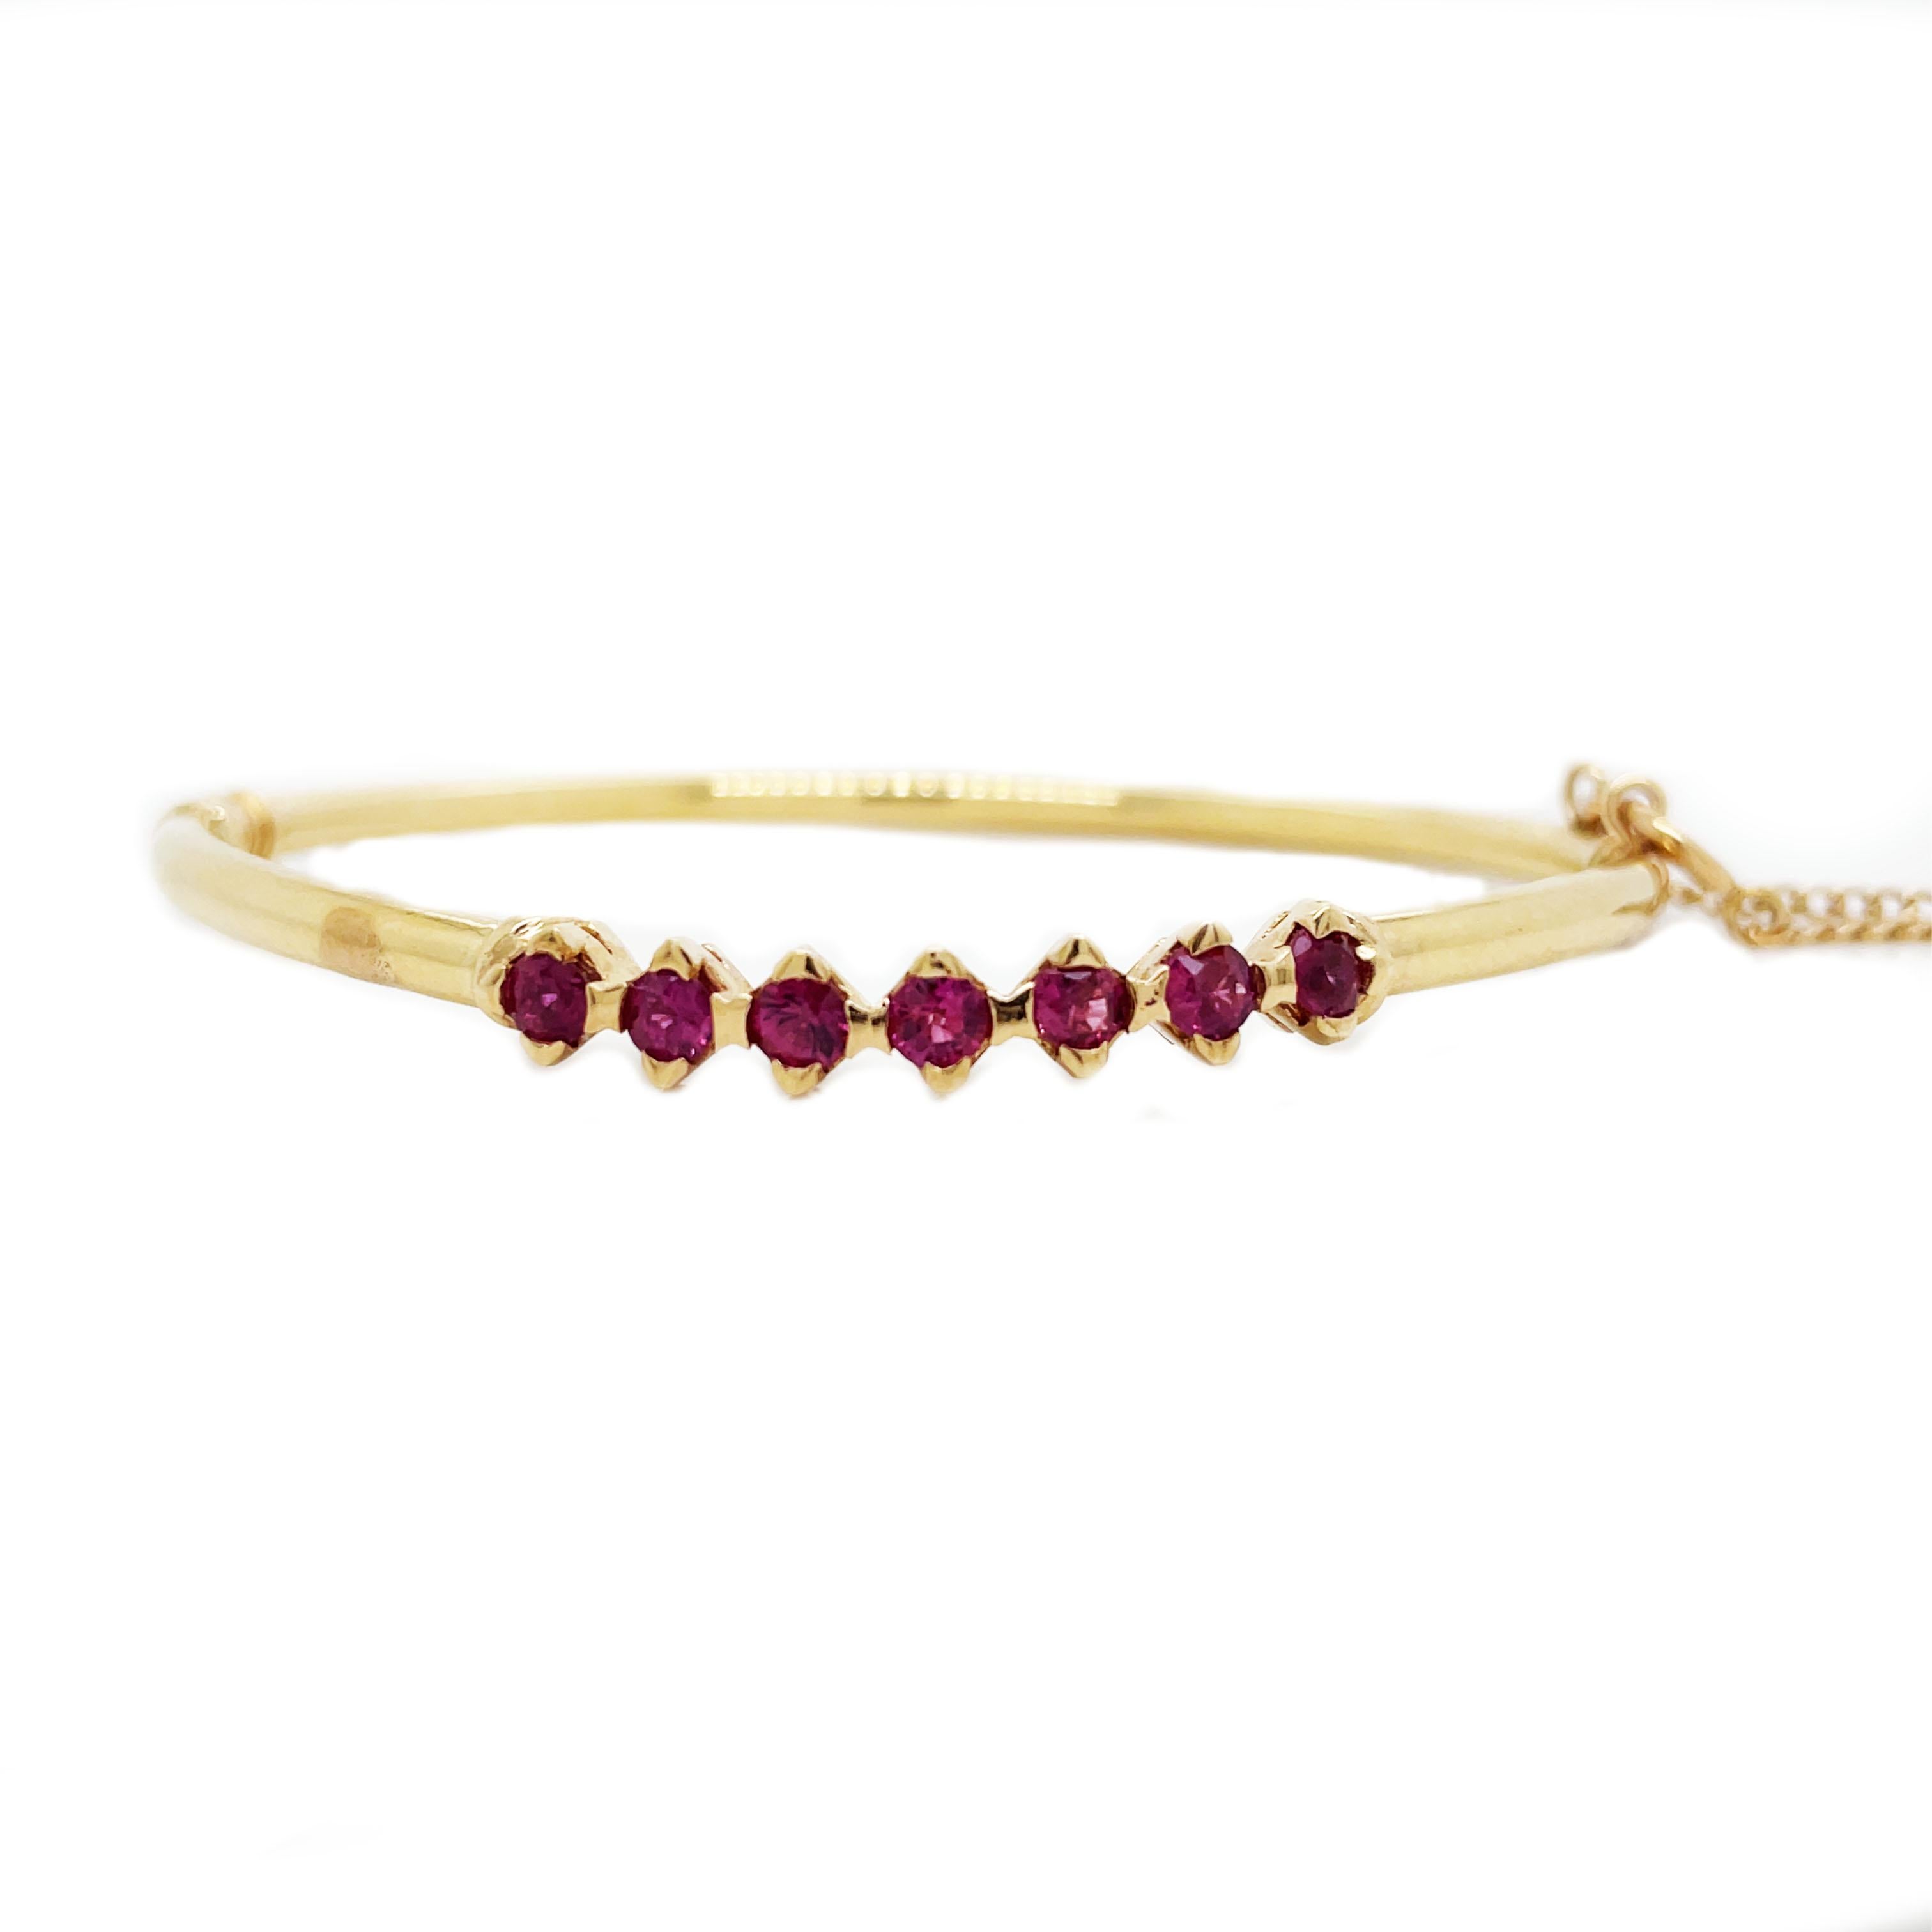 Il s'agit d'un magnifique bracelet des années 1960, fabriqué en or jaune 14 carats, qui met en valeur des rubis éclatants et vibrants ! Le bracelet est articulé, ce qui permet de le porter facilement. Il est extrêmement confortable à porter au